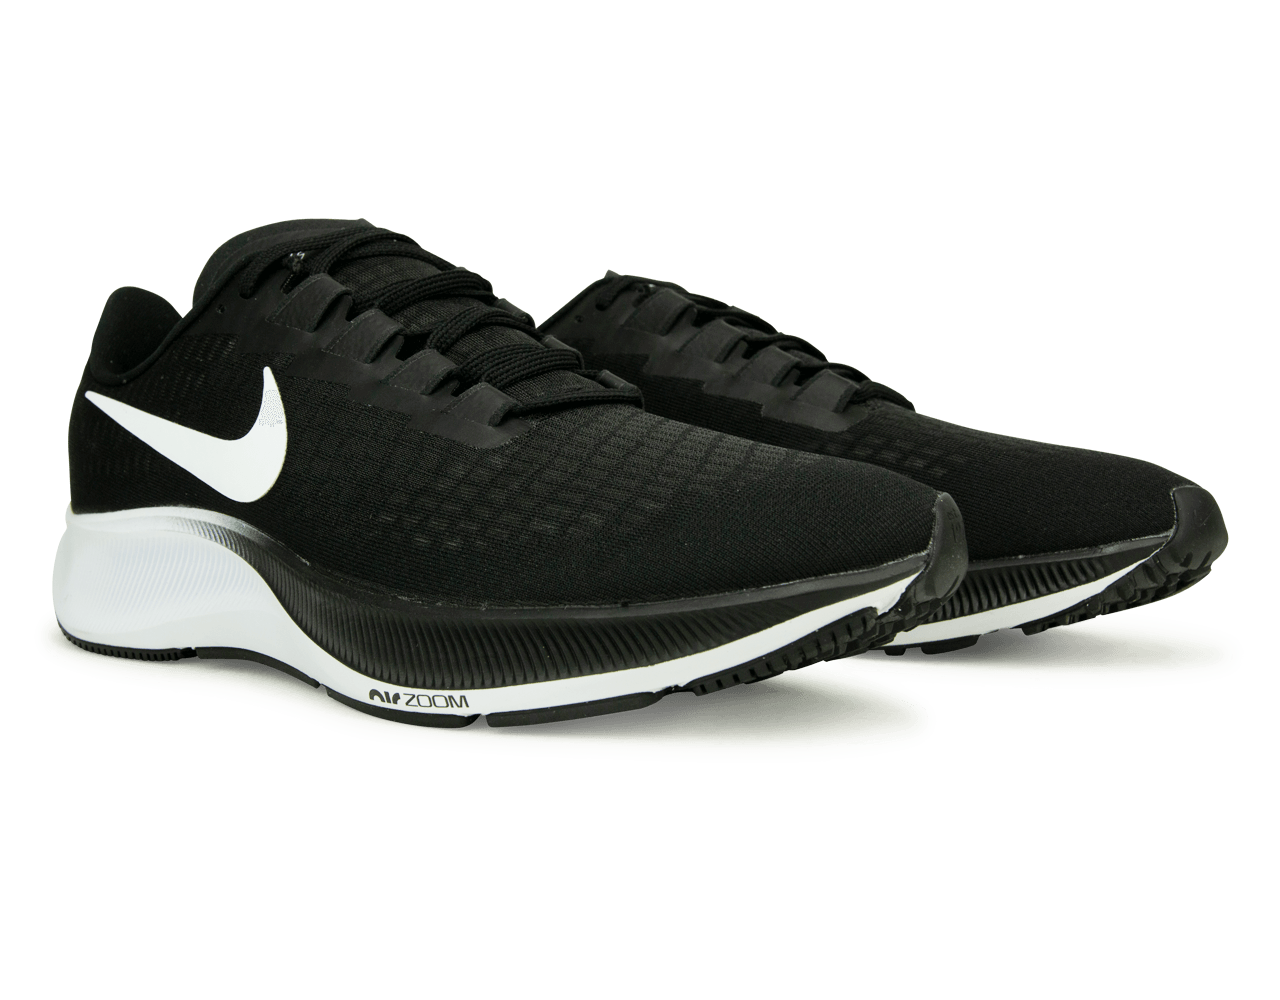 Nike Women's Air Zoom Pegasus 37 Running Shoe Black/White Together